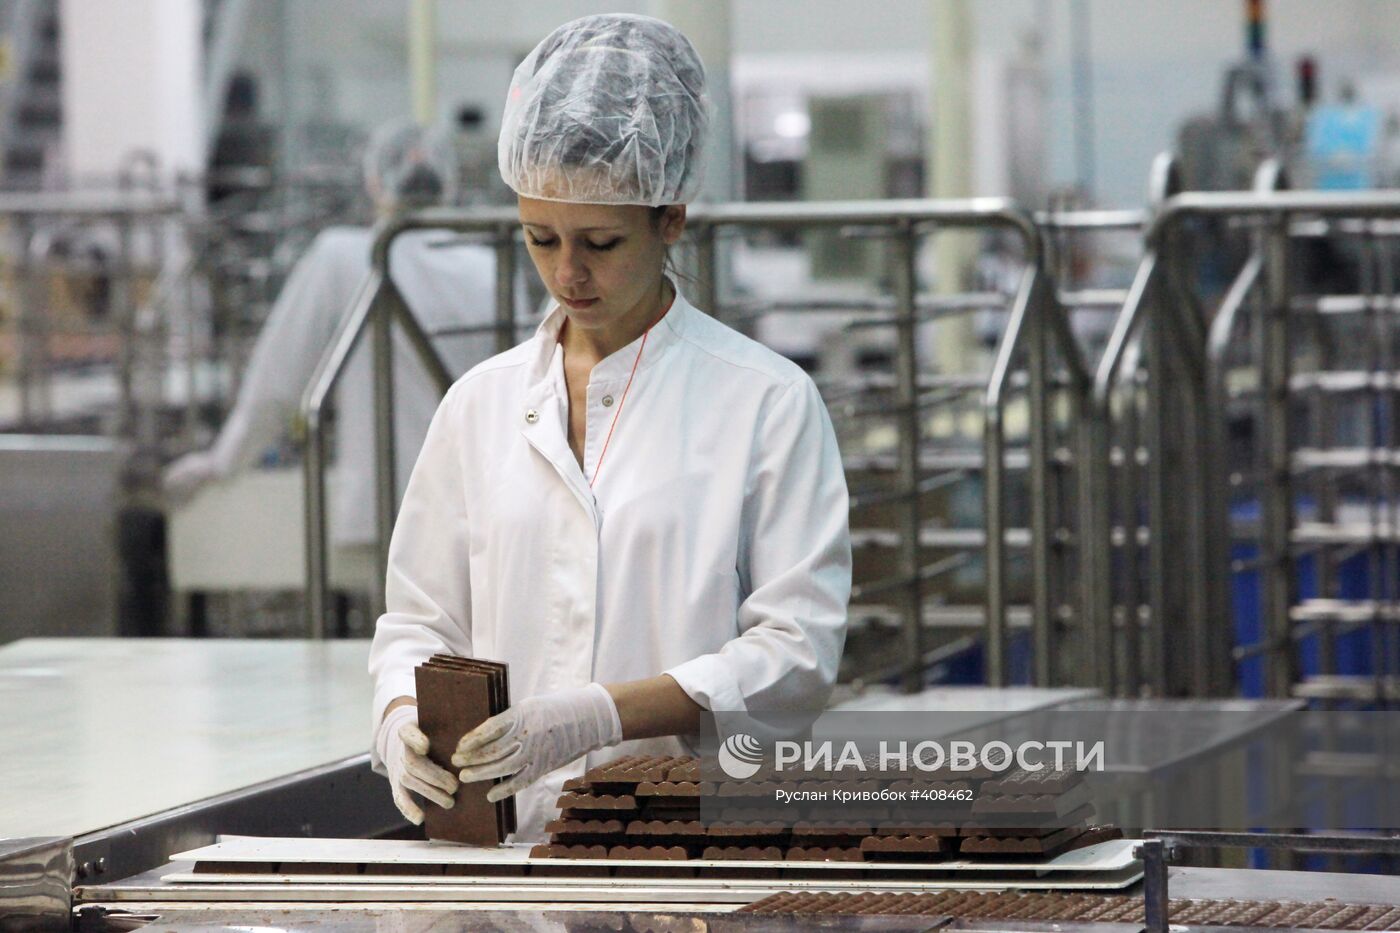 Шоколадная фабрика Kraft Foods во Владимирской области